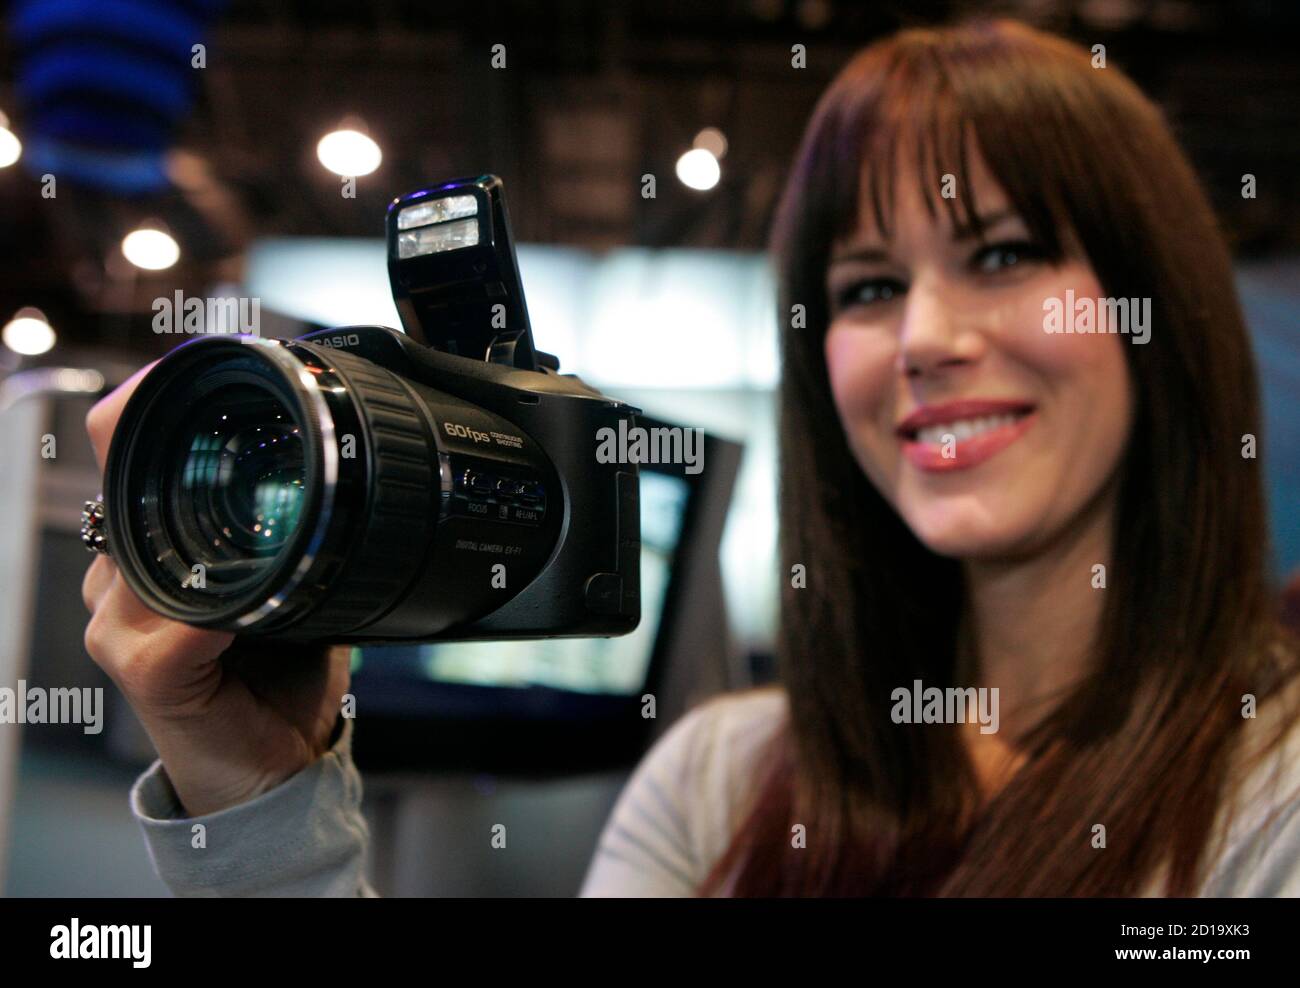 Kari Schultz demuestra la cámara digital Casio EXILIM Pro EX-F1 durante la  Feria de Electrónica de consumo (CES) en las Vegas, Nevada 8 de enero de  2008. La cámara cuenta con un